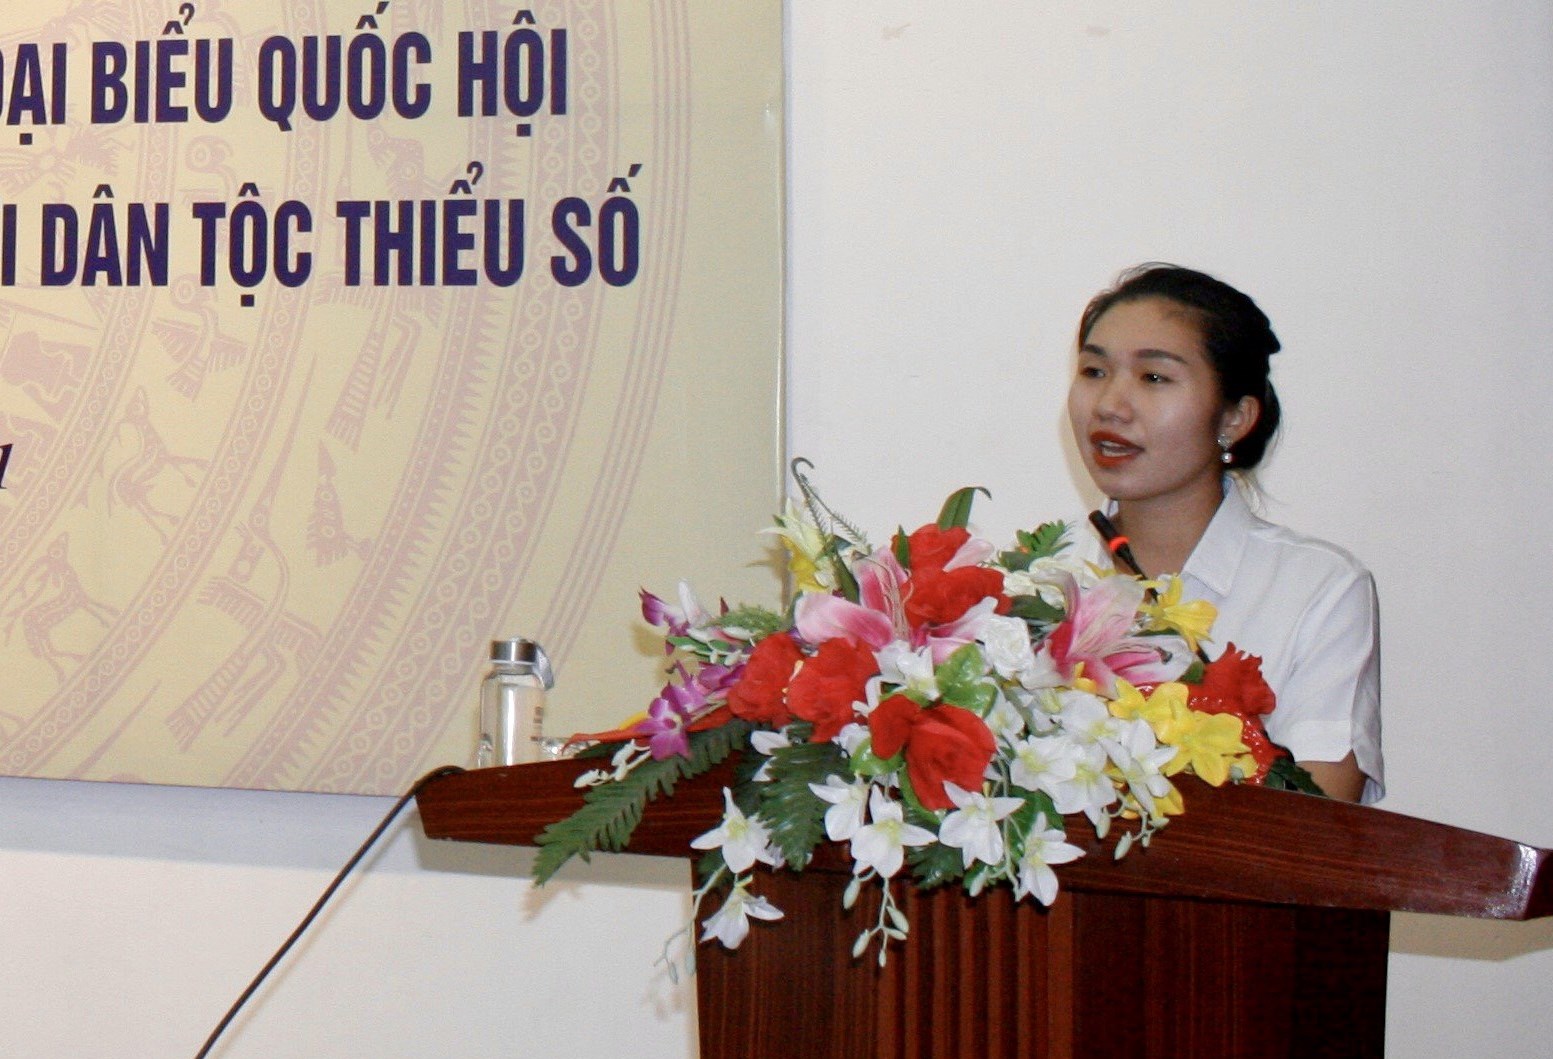 Ứng cử viên Quàng Thị Nguyệt: Tôi rất quan tâm vấn đề bình đẳng giới và bạo lực gia đình